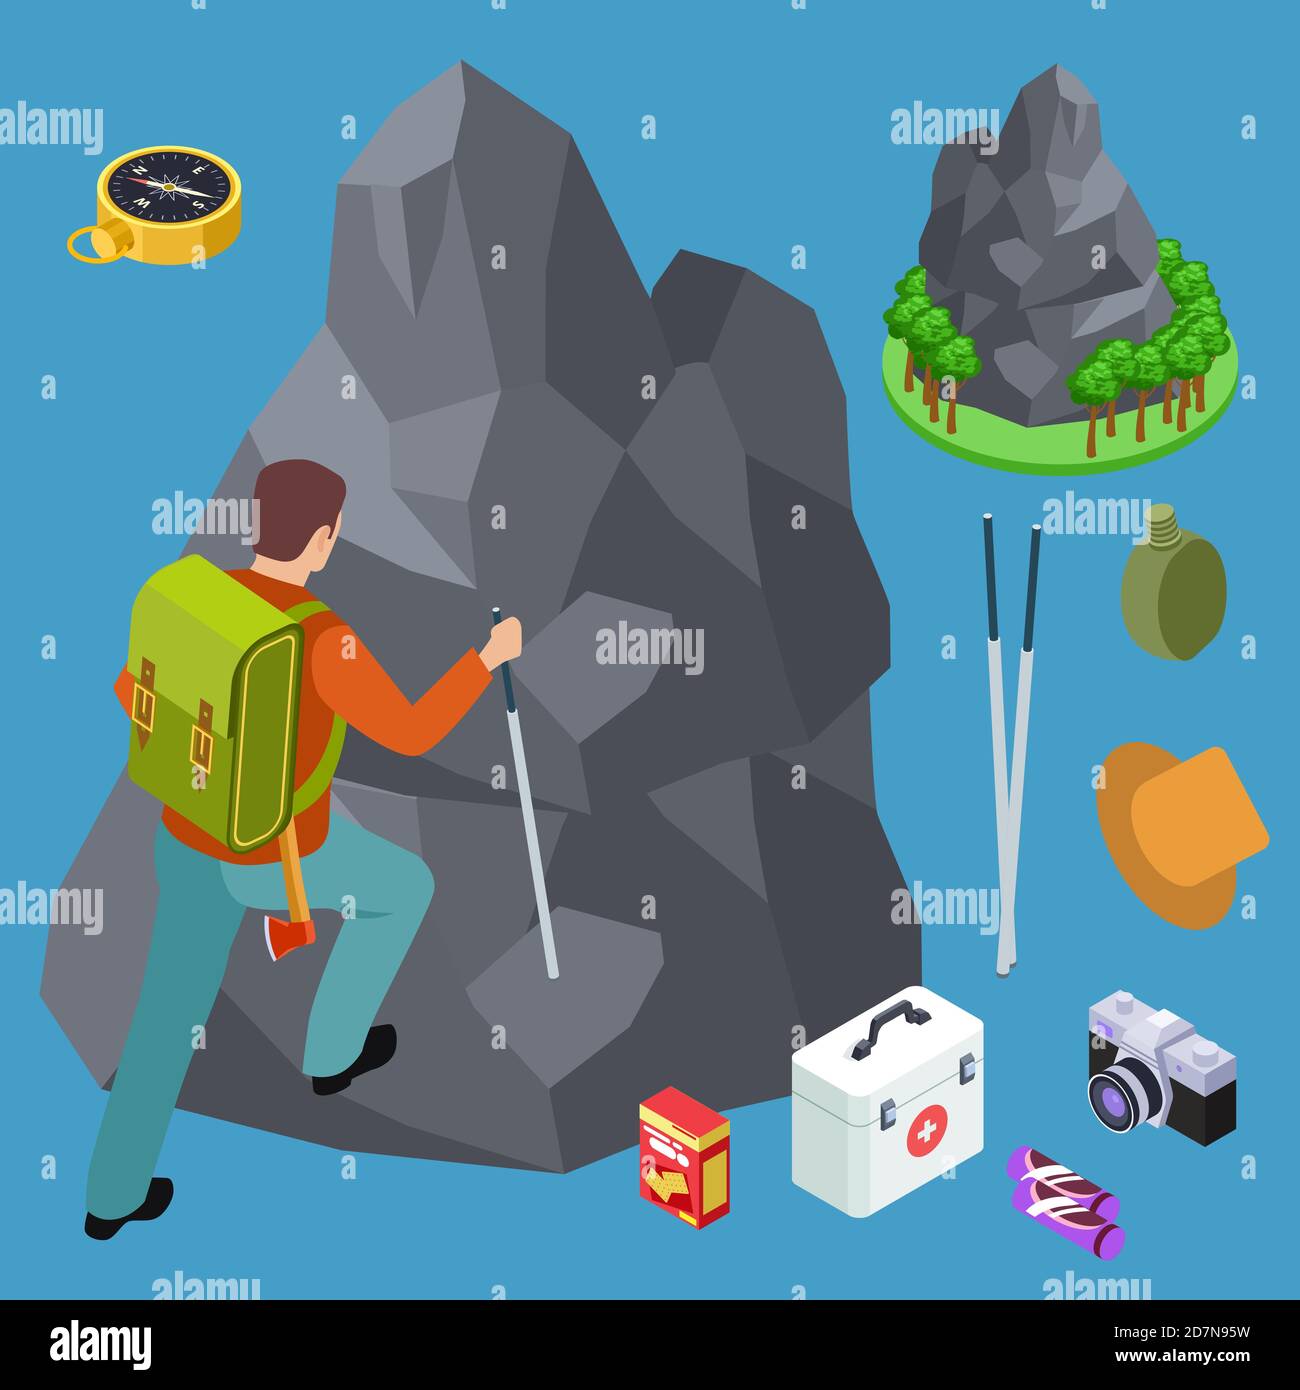 Klettern, Wandern isometrische Vektor-Ausrüstung Set. Illustration von isometrischen Klettern und Wandern, Outdoor 3d Berg Stock Vektor